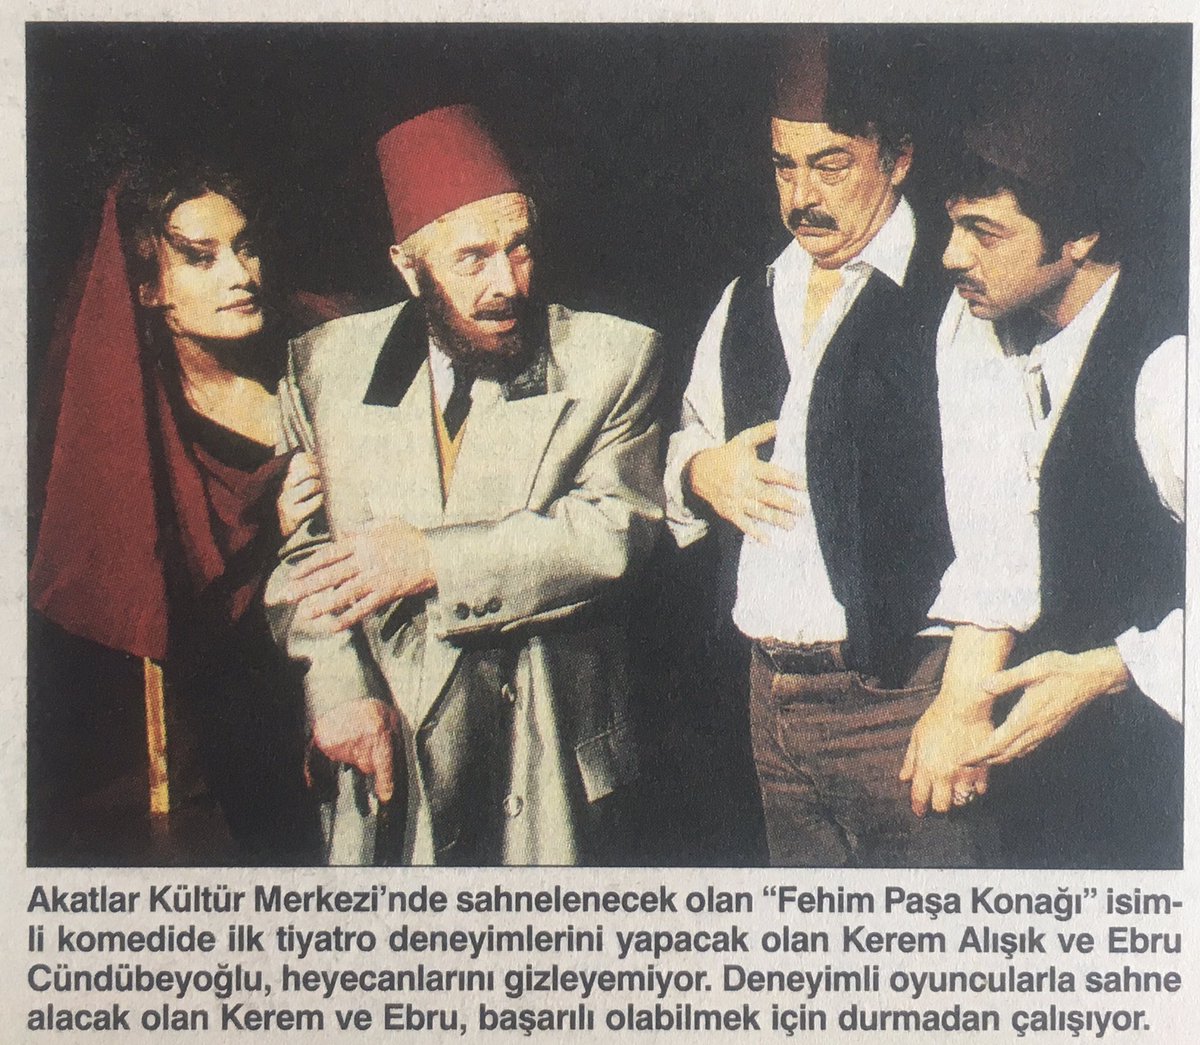 #MehmetUlay'lı Fehimpaşa Konağı. Ankara Sanat Tiyatrosu'nun as kadrosundandı Mehmet Ulay. Bugün hâlâ üretiyor. Pek çok oyun yönetiyor.   #TomrisOğuzalp, #İsmailHakkıŞen ve #AyberkAtilla gibi ustalar da vardı kadroda...